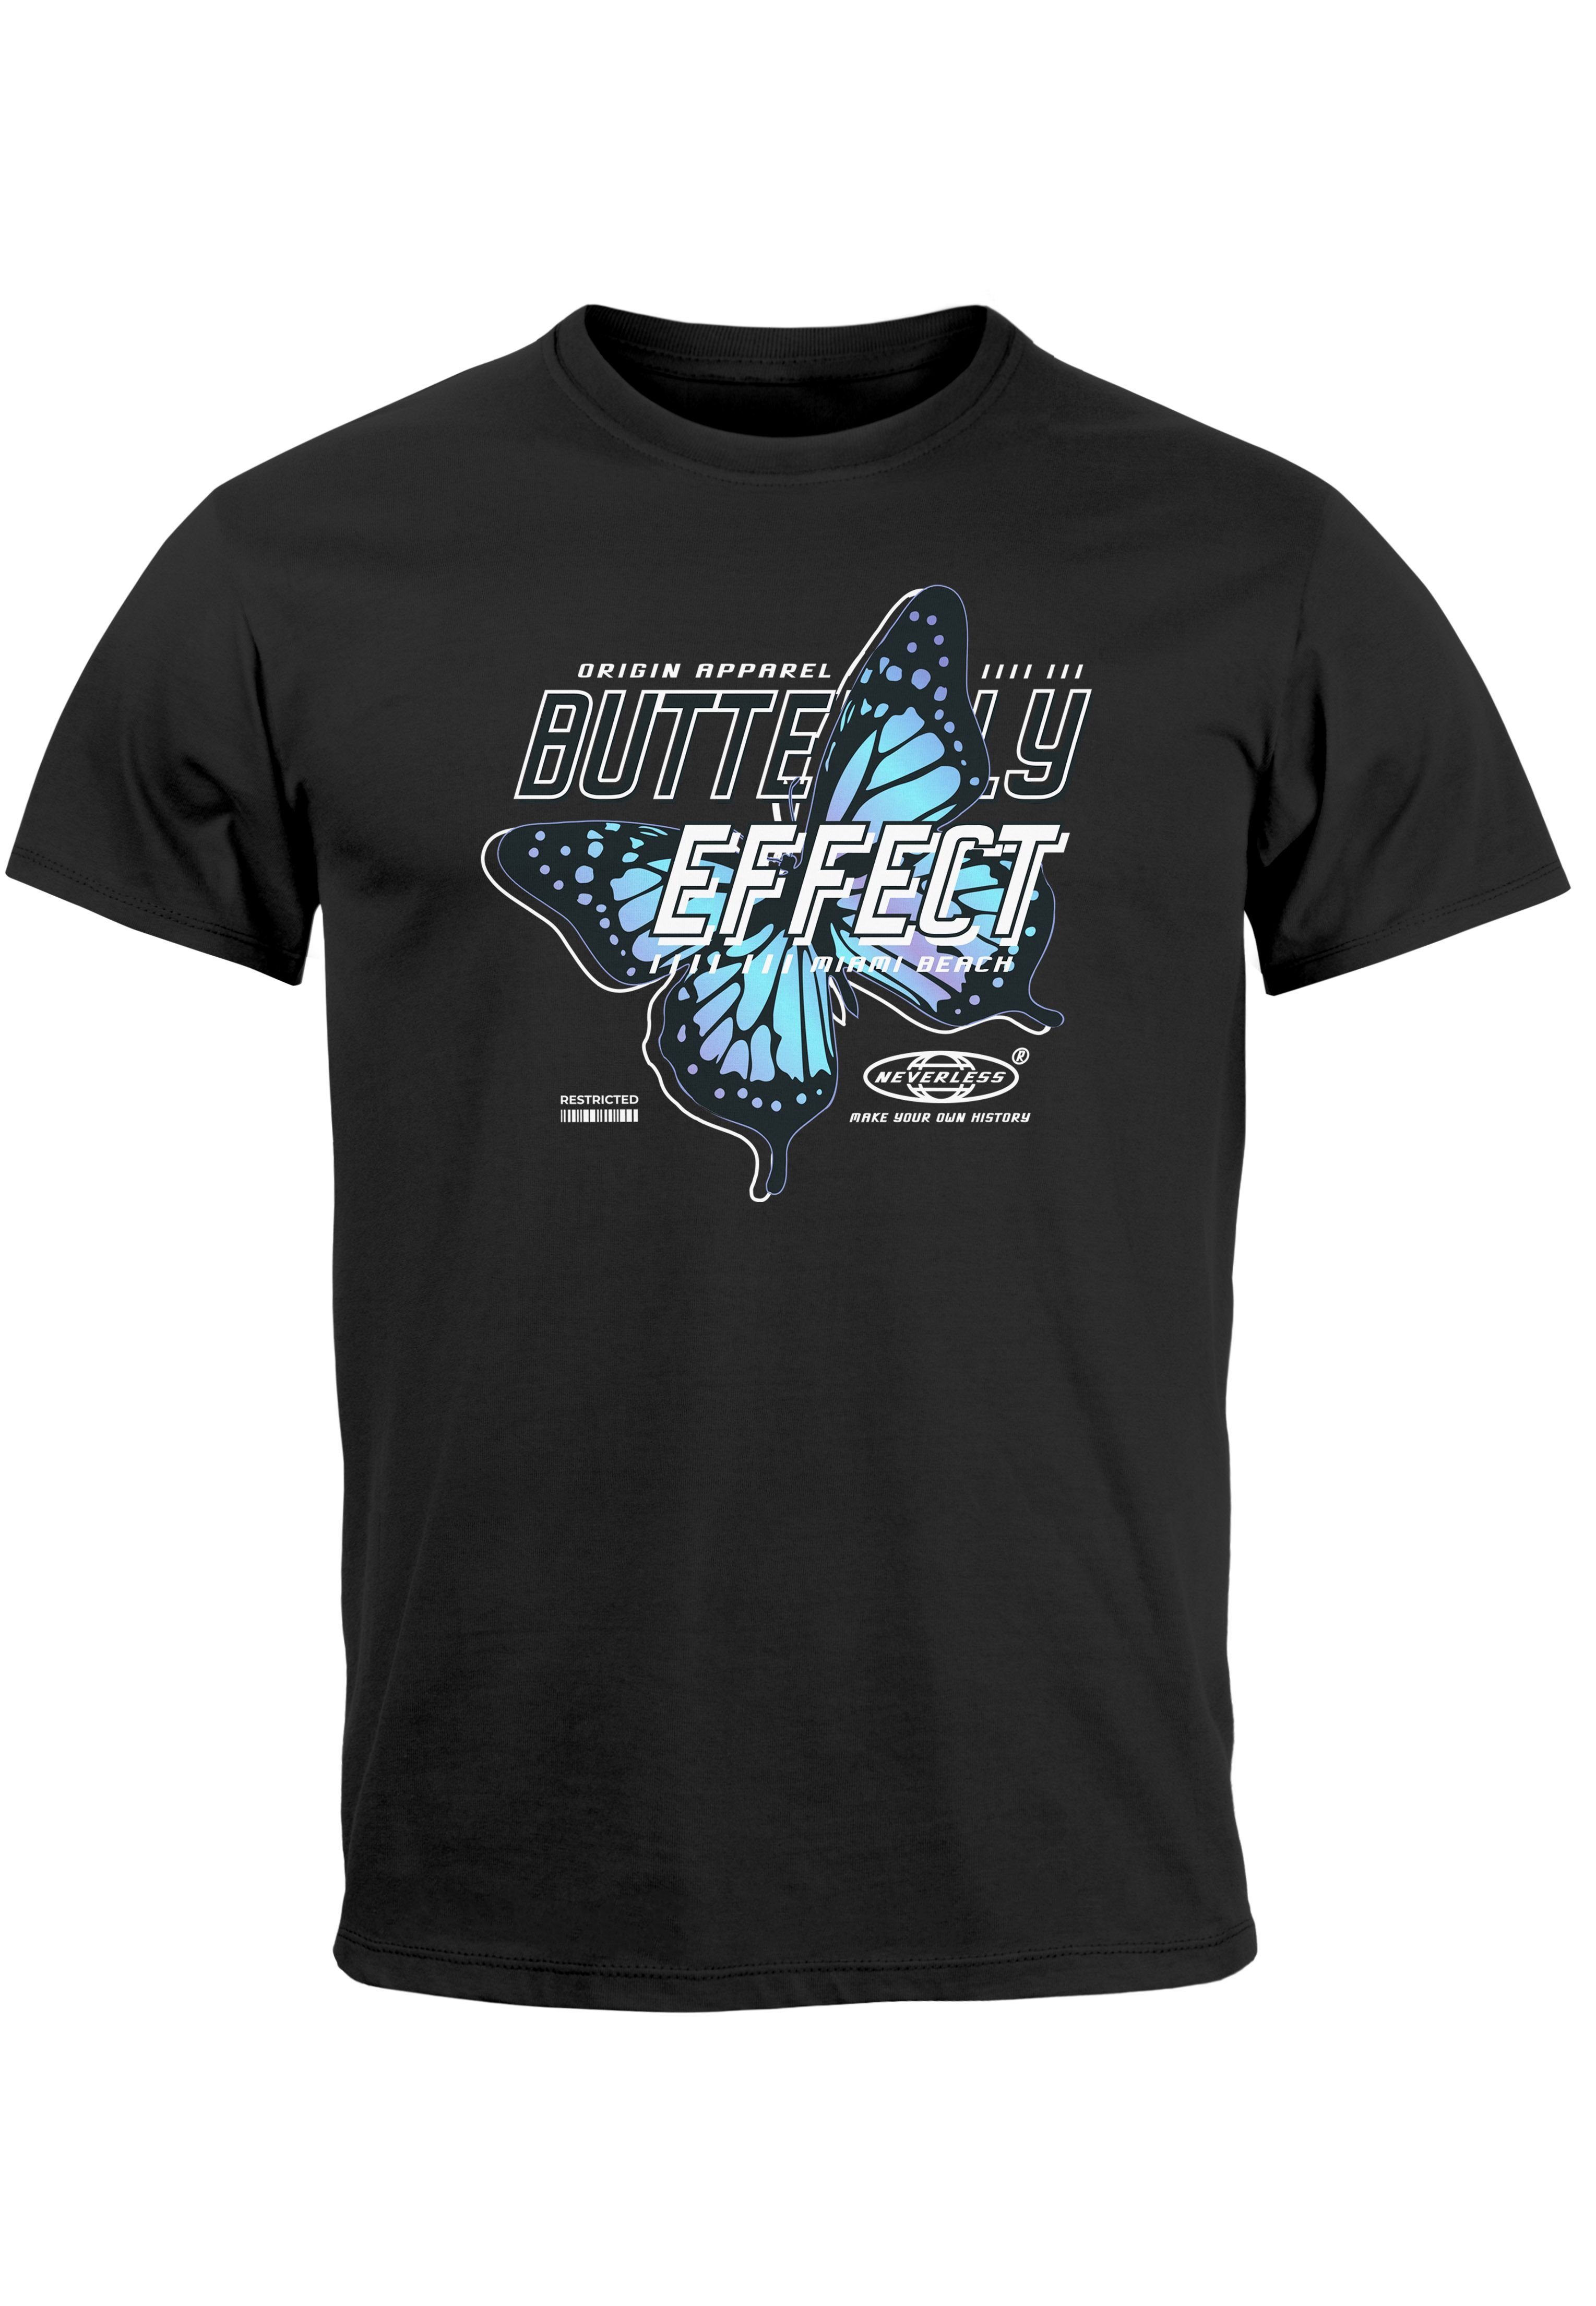 Neverless Print-Shirt Herren T-Shirt Bedruckt Schriftzug Butterfly Effect Schmetterling Fash mit Print schwarz